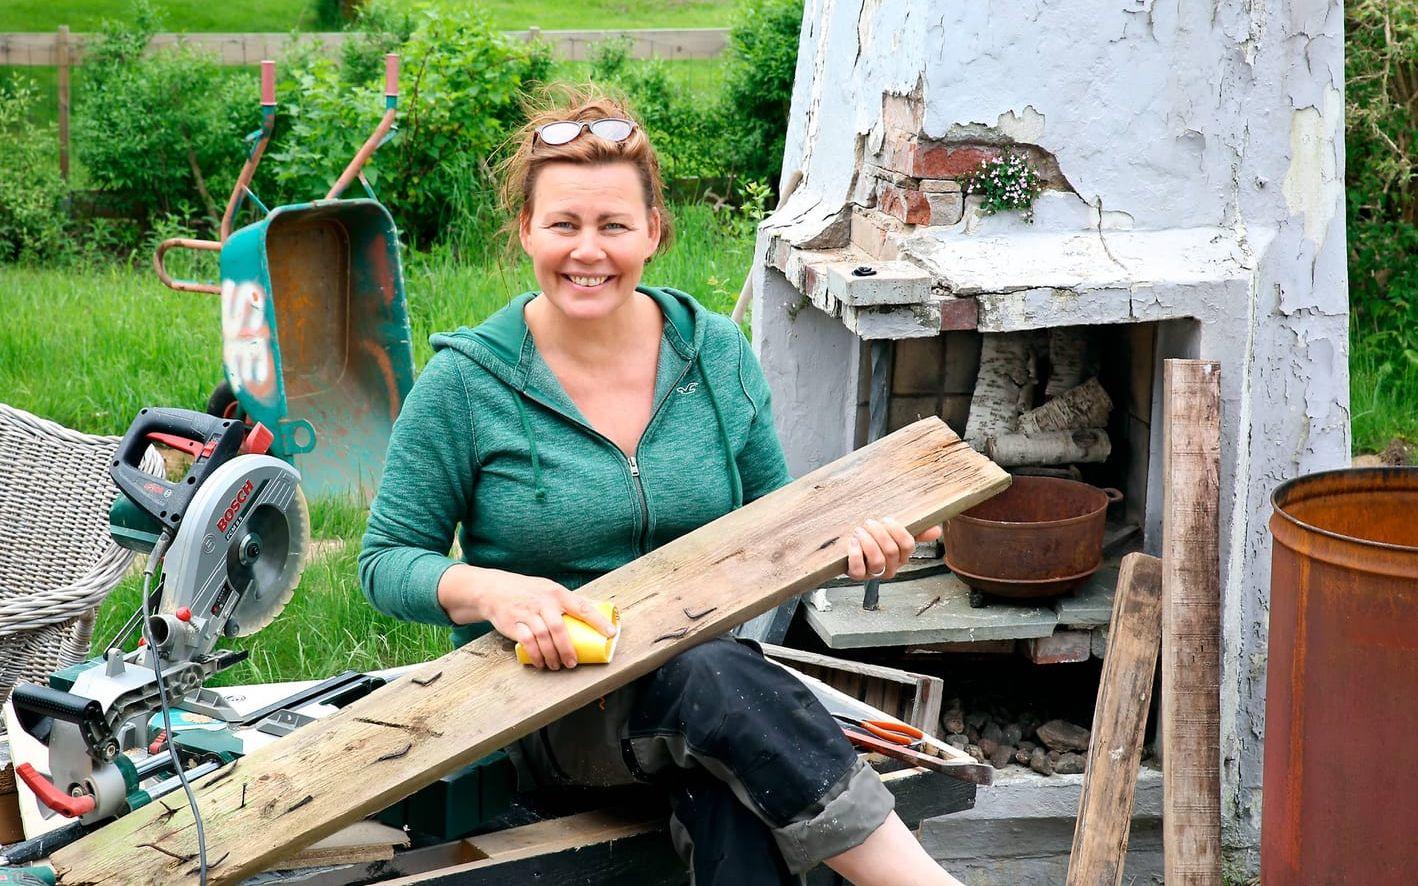 Lisa Ström som fyller 50 på tisdag utmanar sig själv mitt i livet, säger upp sig från en fast tjänst och satsar på att jobba med inredning och trädgårdsarkitektur i egen regi. Bild: Elisabet Omsén